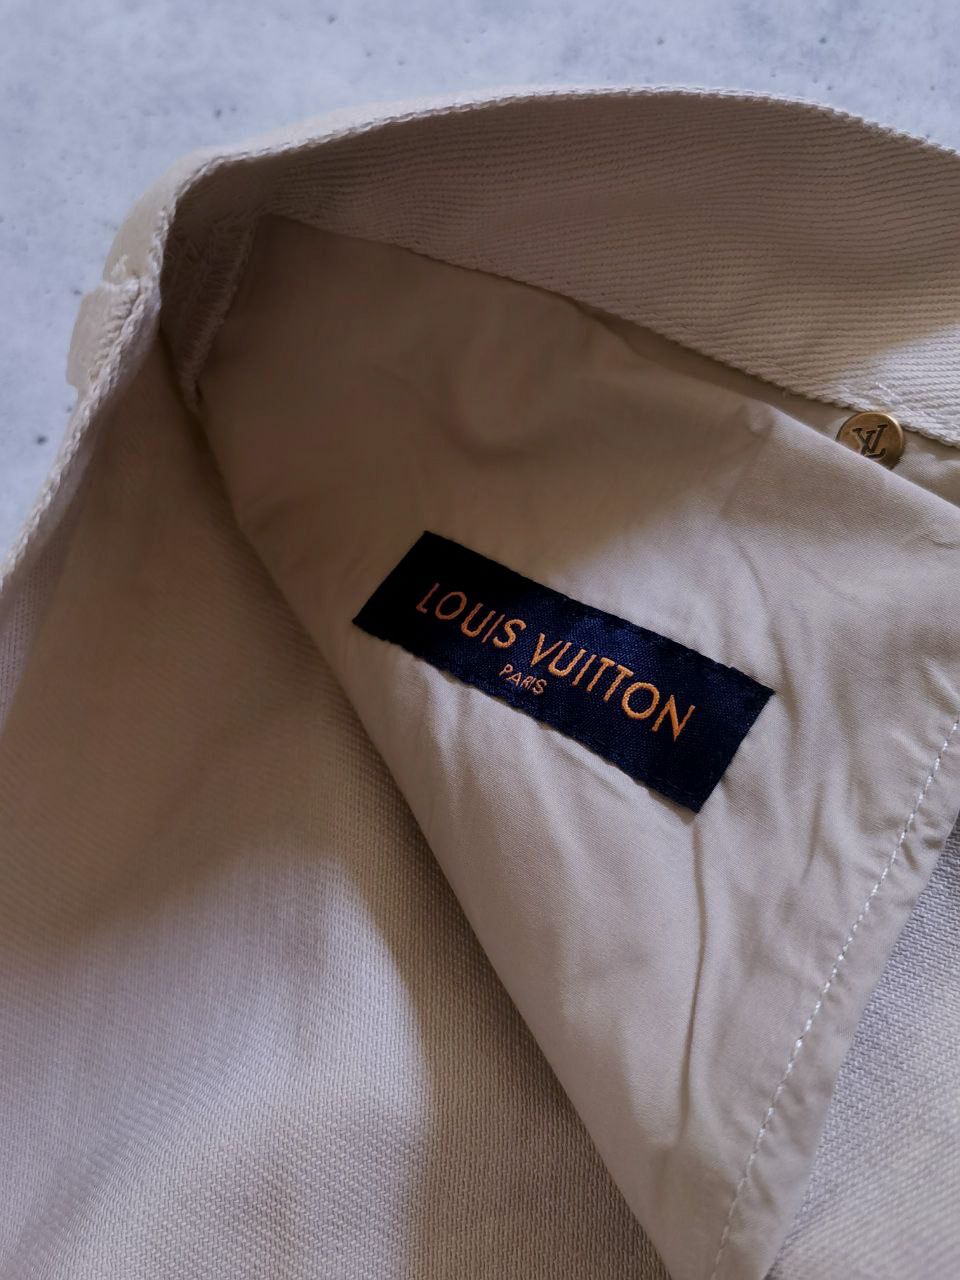 Louis Vuitton Monogram Workwear Denim Carpenter Pants Off-White (Myrtle  Beach Location)